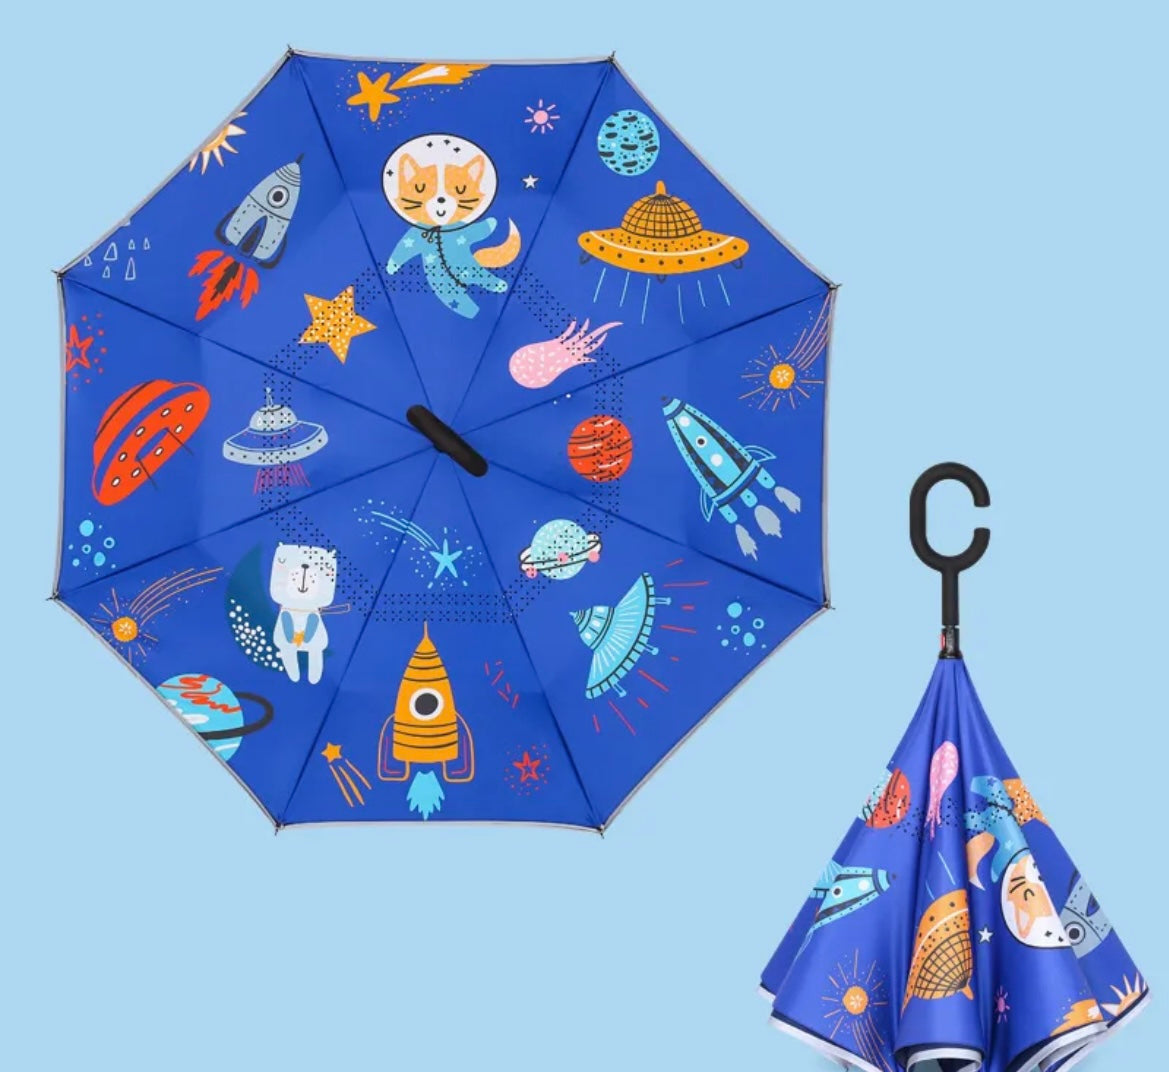 Outer Space Umbrellas